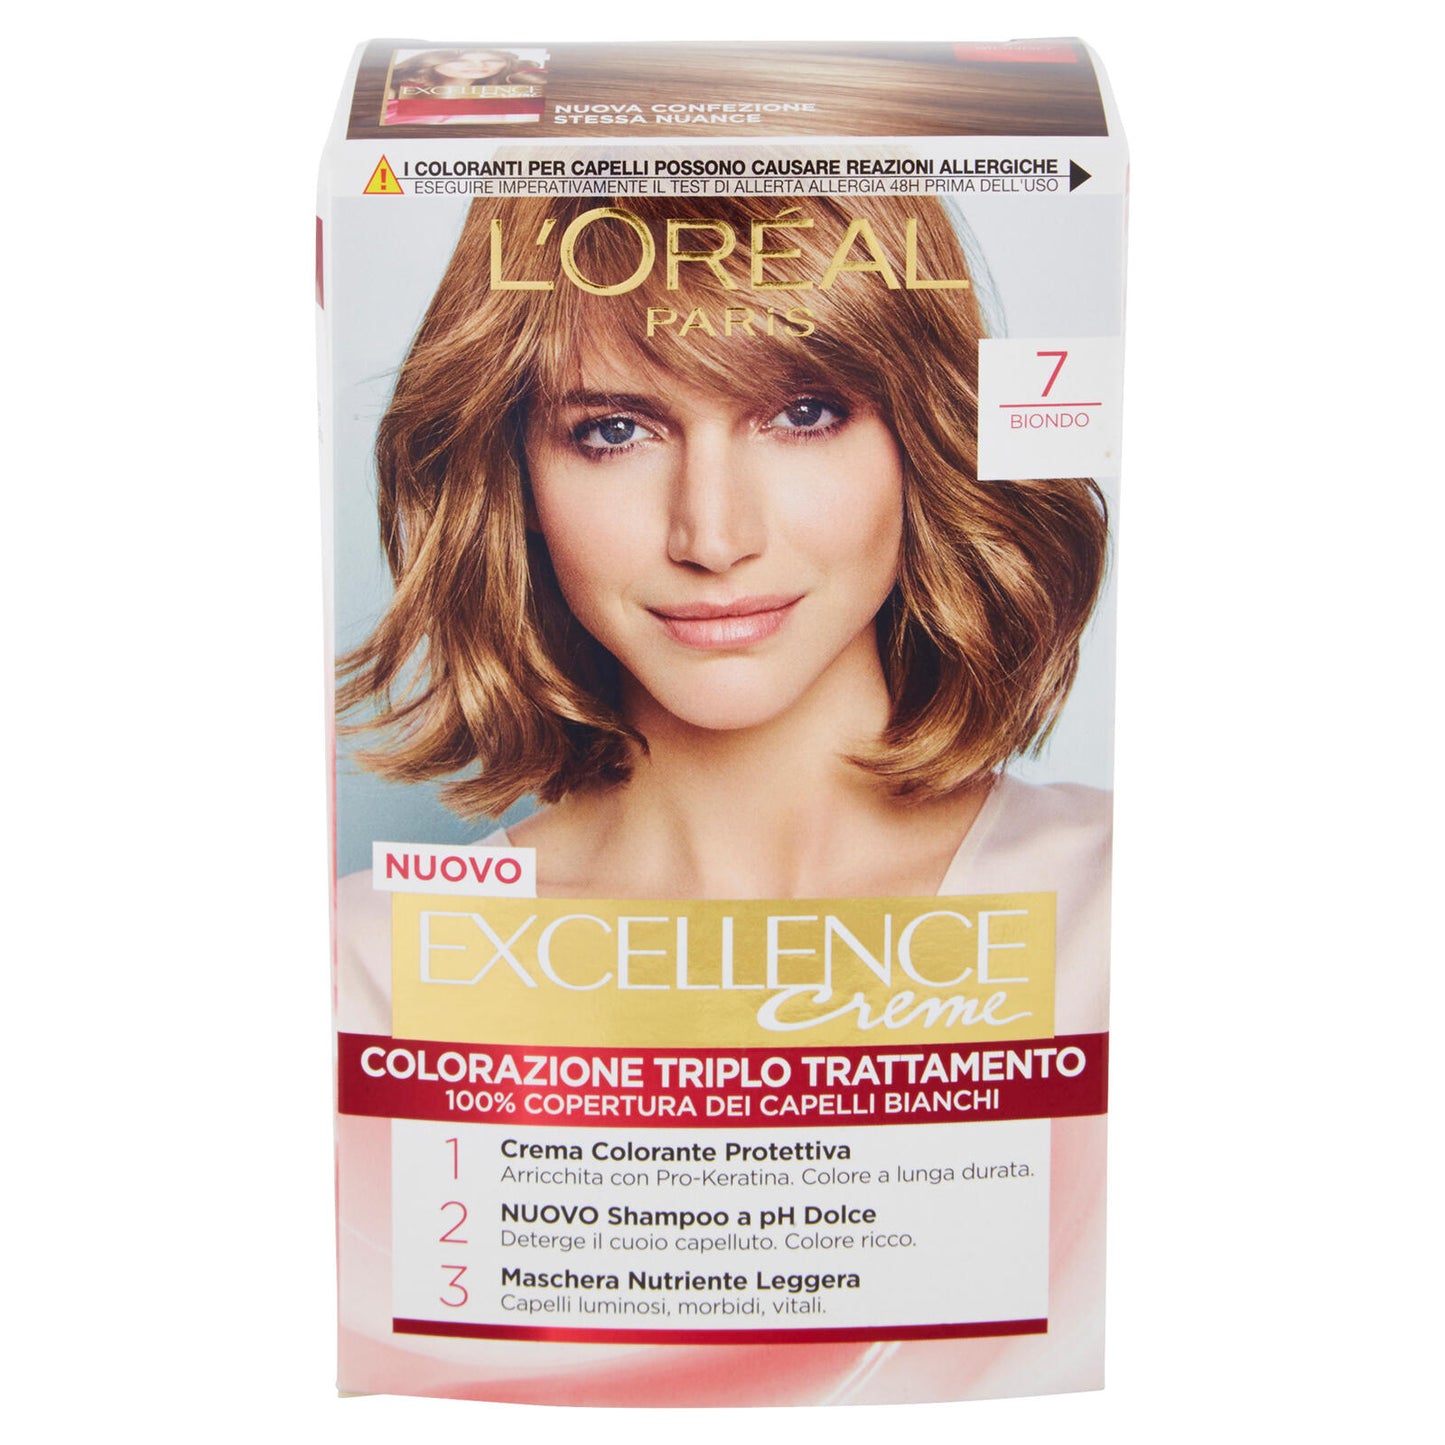 L'Oréal Paris Excellence Crema colorante triplo trattamento avanzato, 7 Biondo